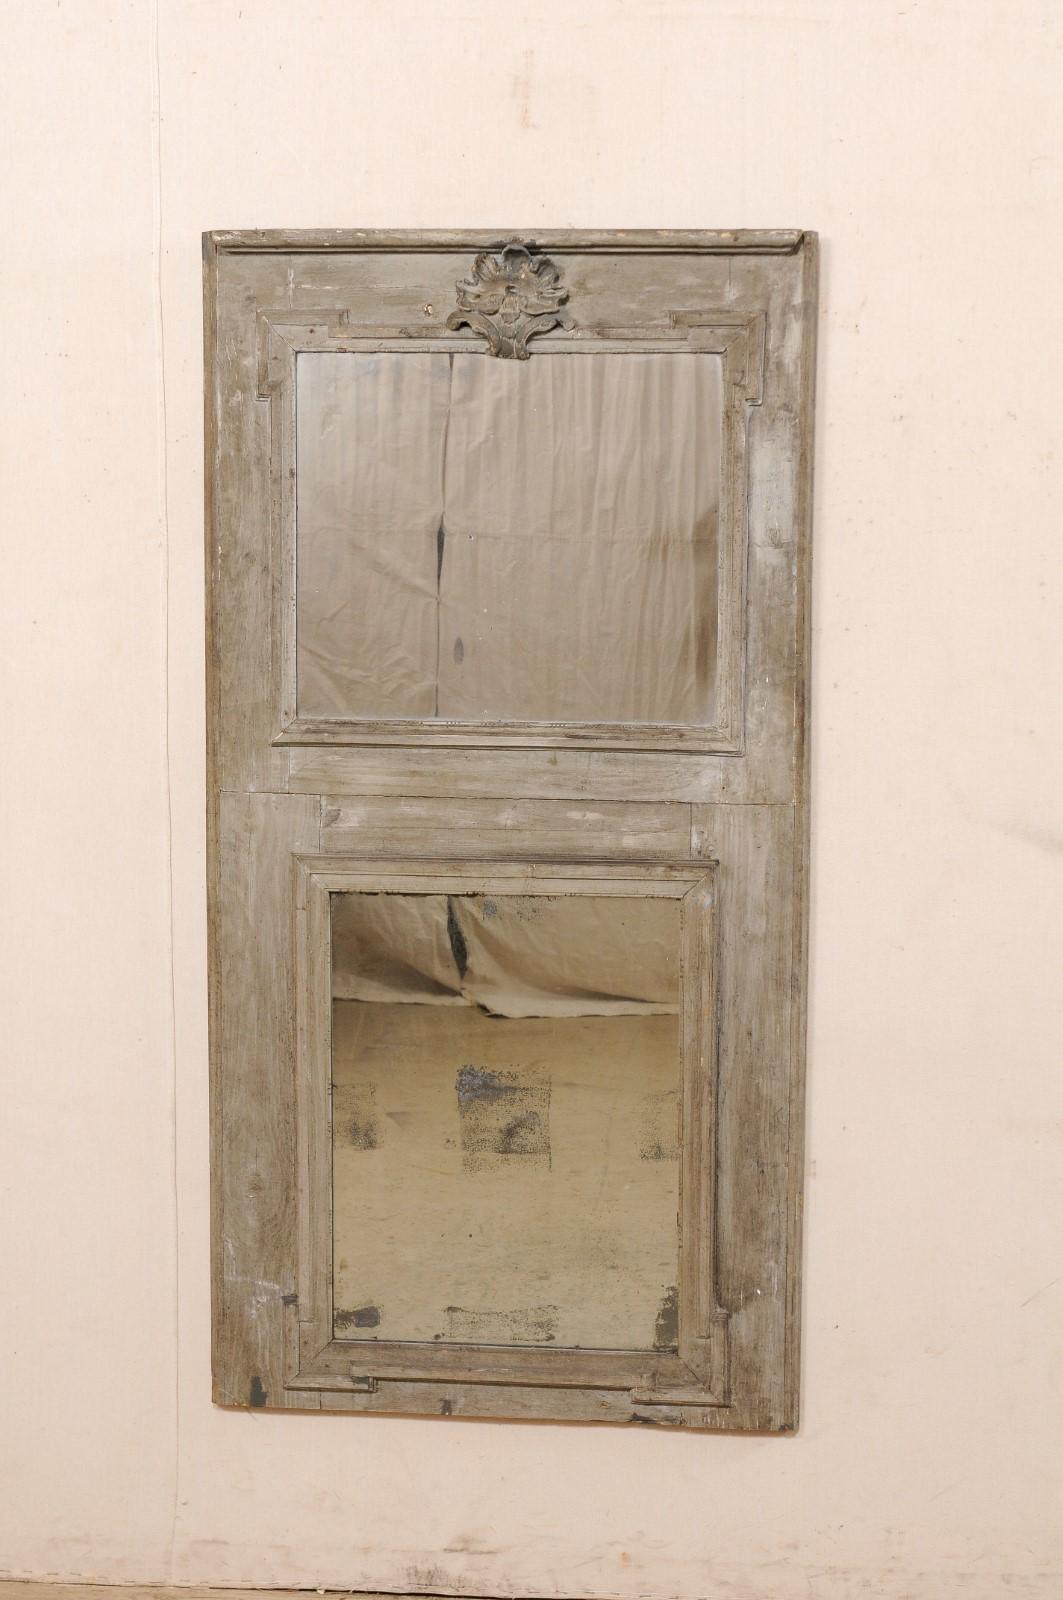 Un miroir à trumeau en bois français du 19ème siècle. Ce miroir ancien de France présente une forme rectangulaire disposée verticalement, avec des moulures droites, un miroir placé dans un panneau supérieur, au-dessus d'un miroir secondaire en